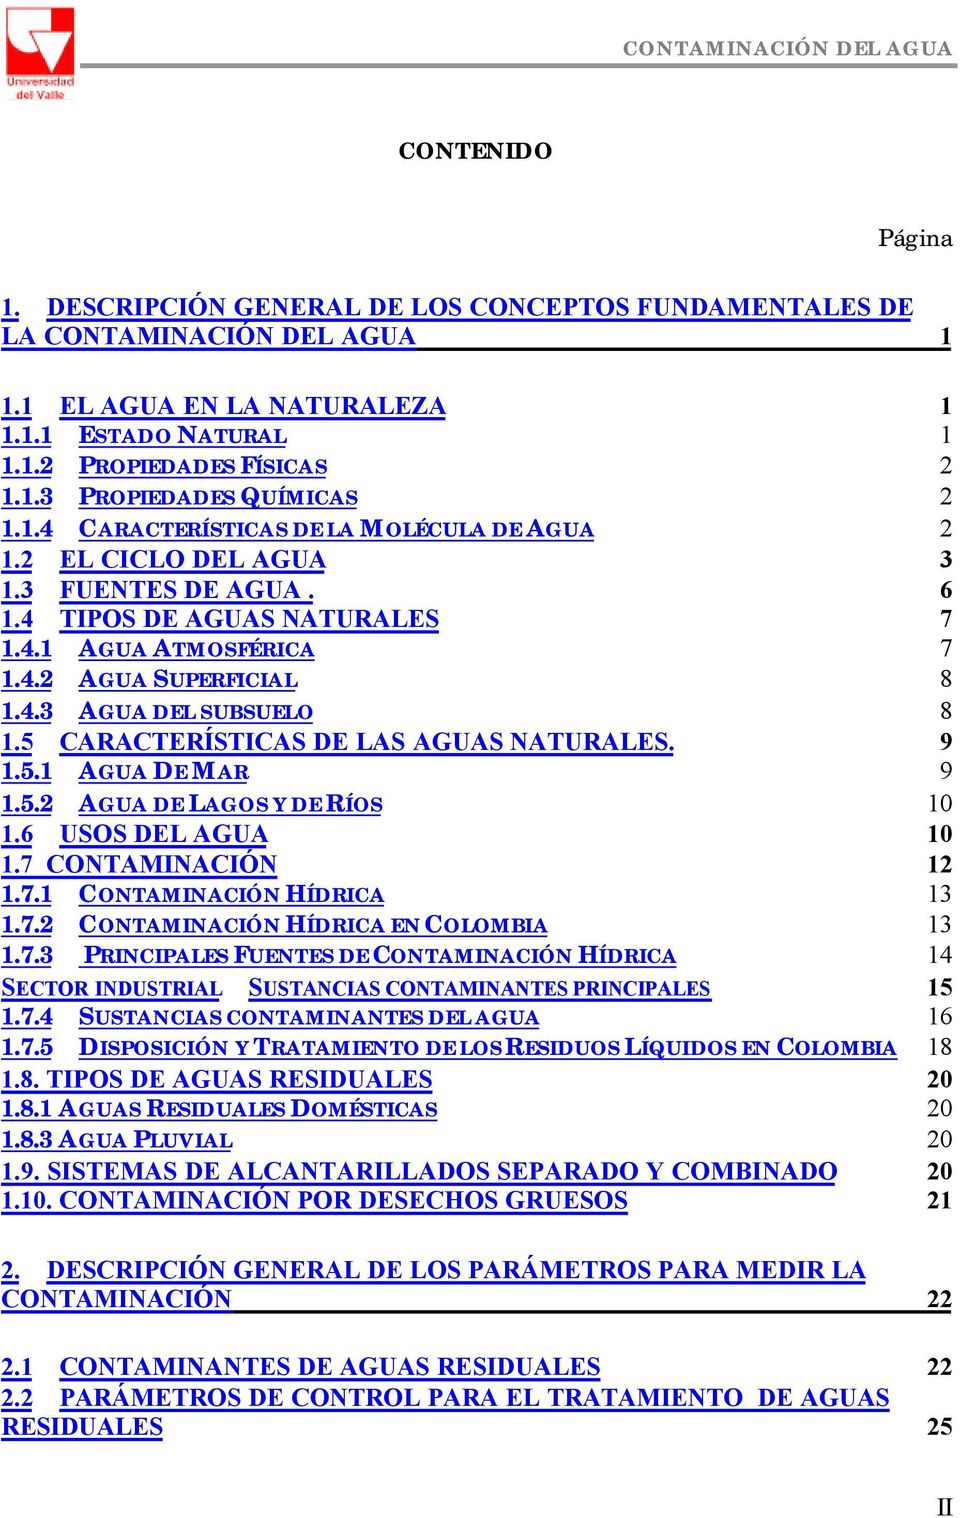 5 CARACTERÍSTICAS DE LAS AGUAS NATURALES. 9 1.5.1 AGUA DE MAR 9 1.5.2 AGUA DE LAGOS Y DE RÍOS 10 1.6 USOS DEL AGUA 10 1.7 CONTAMINACIÓN 12 1.7.1 CONTAMINACIÓN HÍDRICA 13 1.7.2 CONTAMINACIÓN HÍDRICA EN COLOMBIA 13 1.